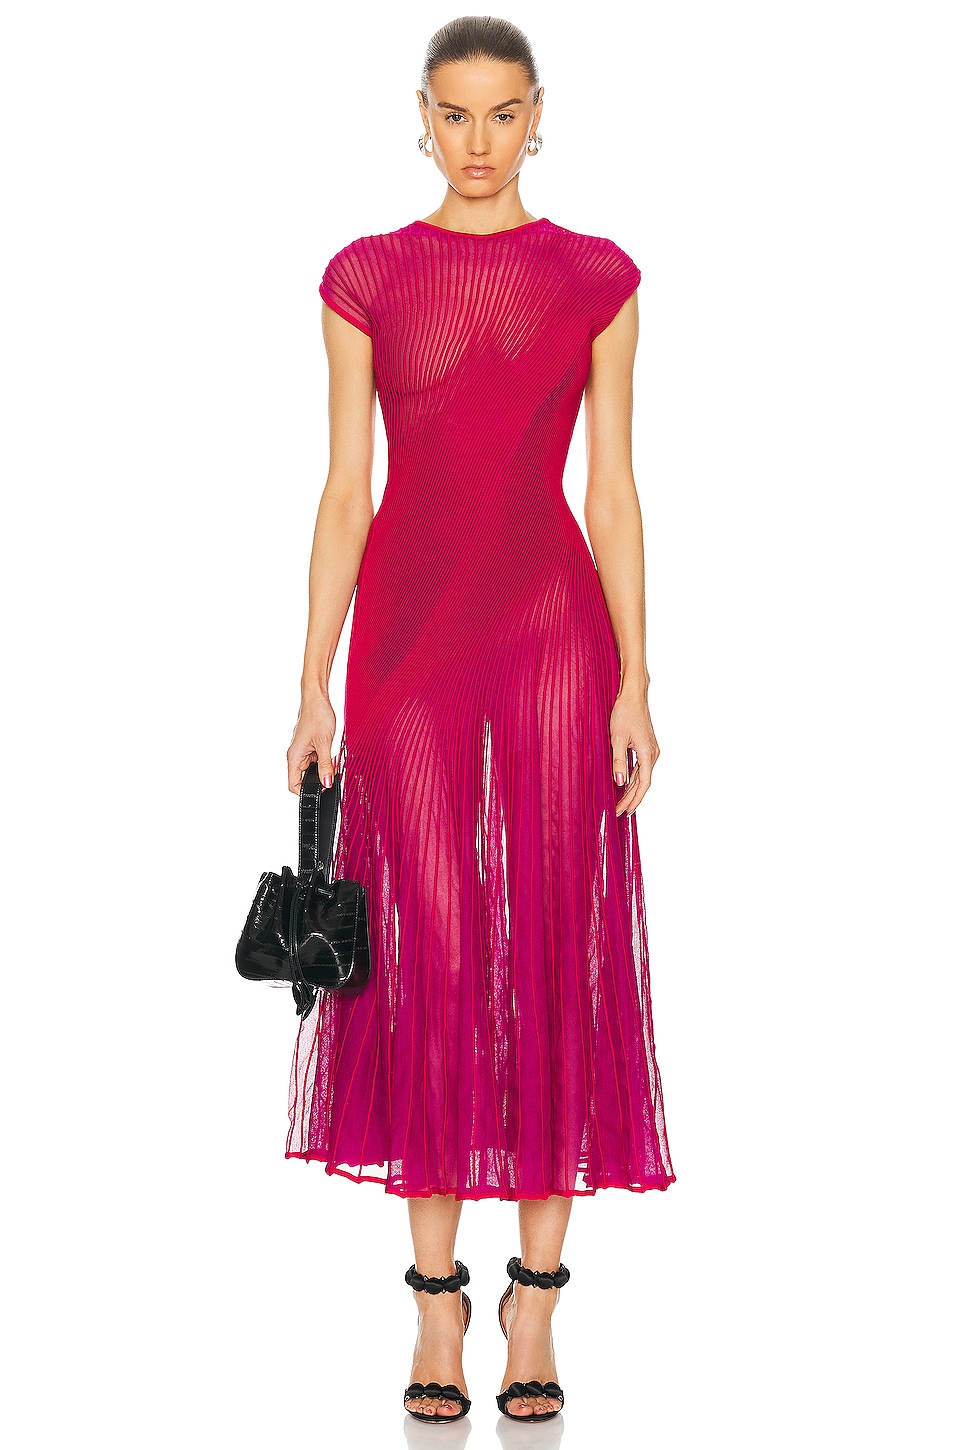 ALAÏA Twisted Dress in Fuchsia